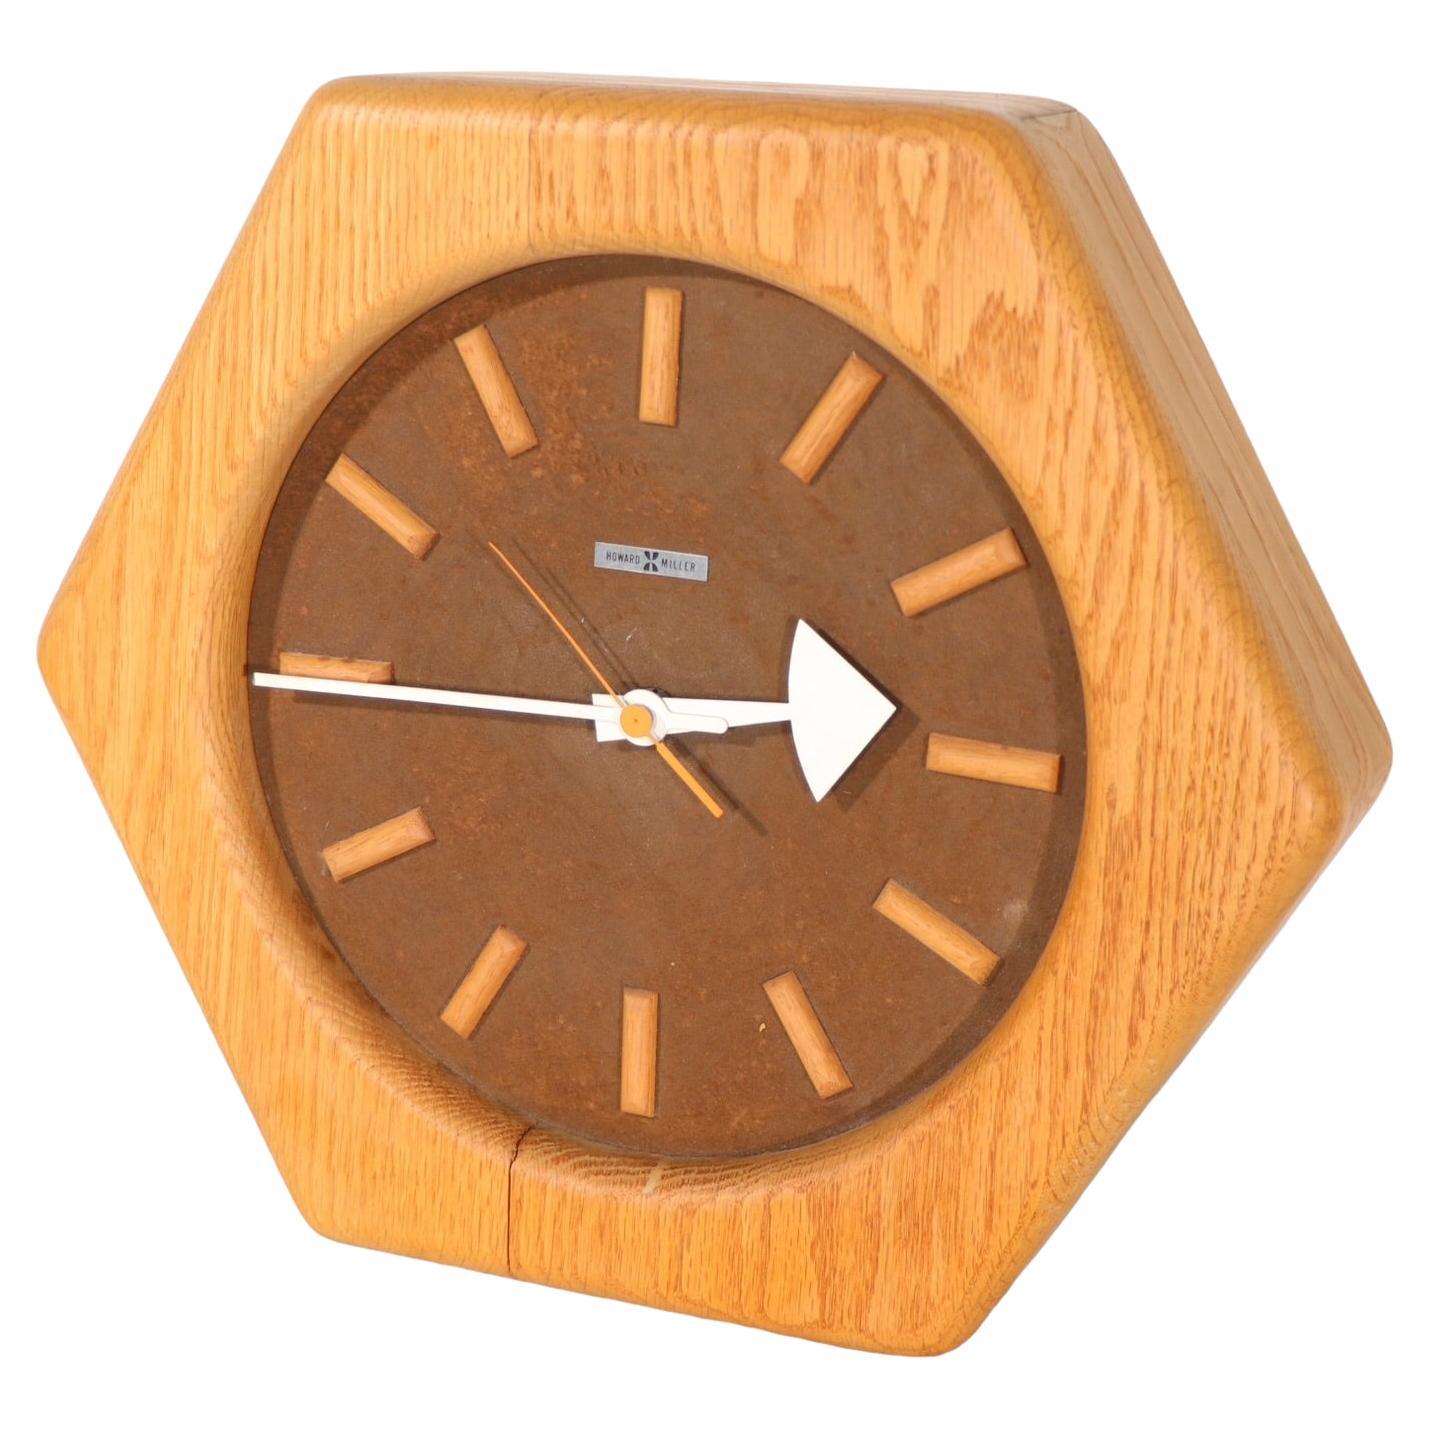 https://a.1stdibscdn.com/george-nelson-howard-miller-hexagonal-wood-frame-clock-c-1960-1980s-for-sale/f_9787/f_371581821700351859587/f_37158182_1700351860113_bg_processed.jpg